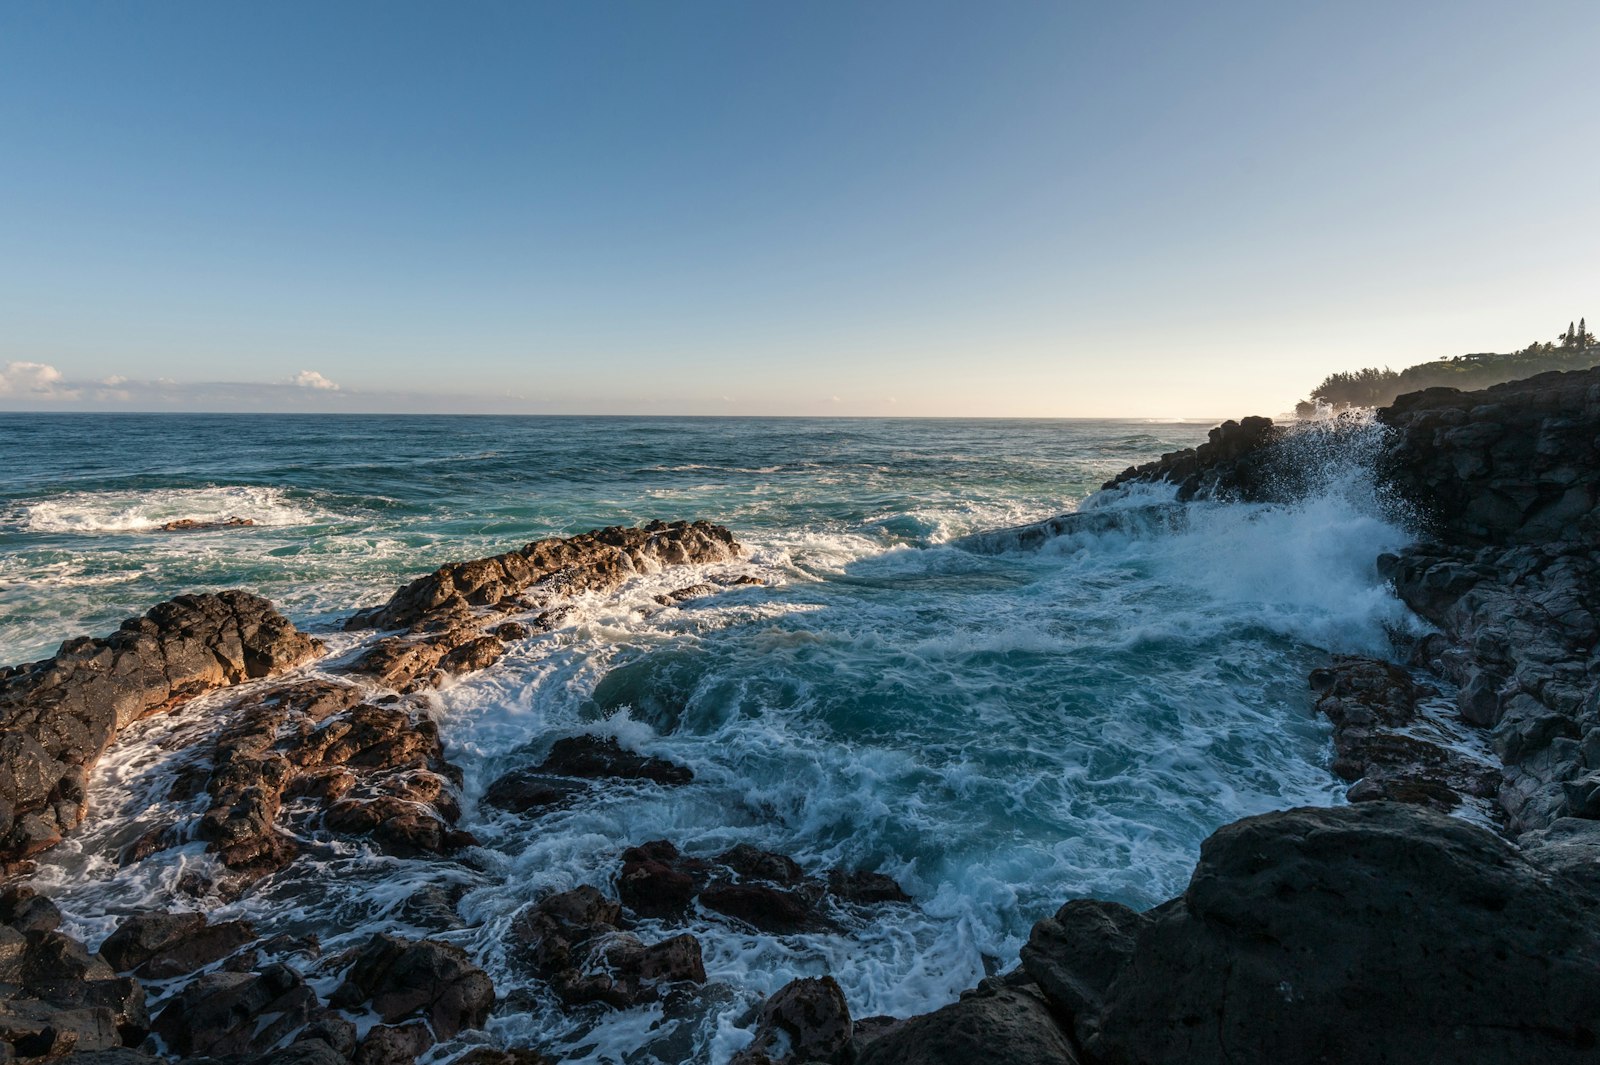 Nikon AF-S Nikkor 14-24mm F2.8G ED sample photo. Ocean waves hammering rock photography